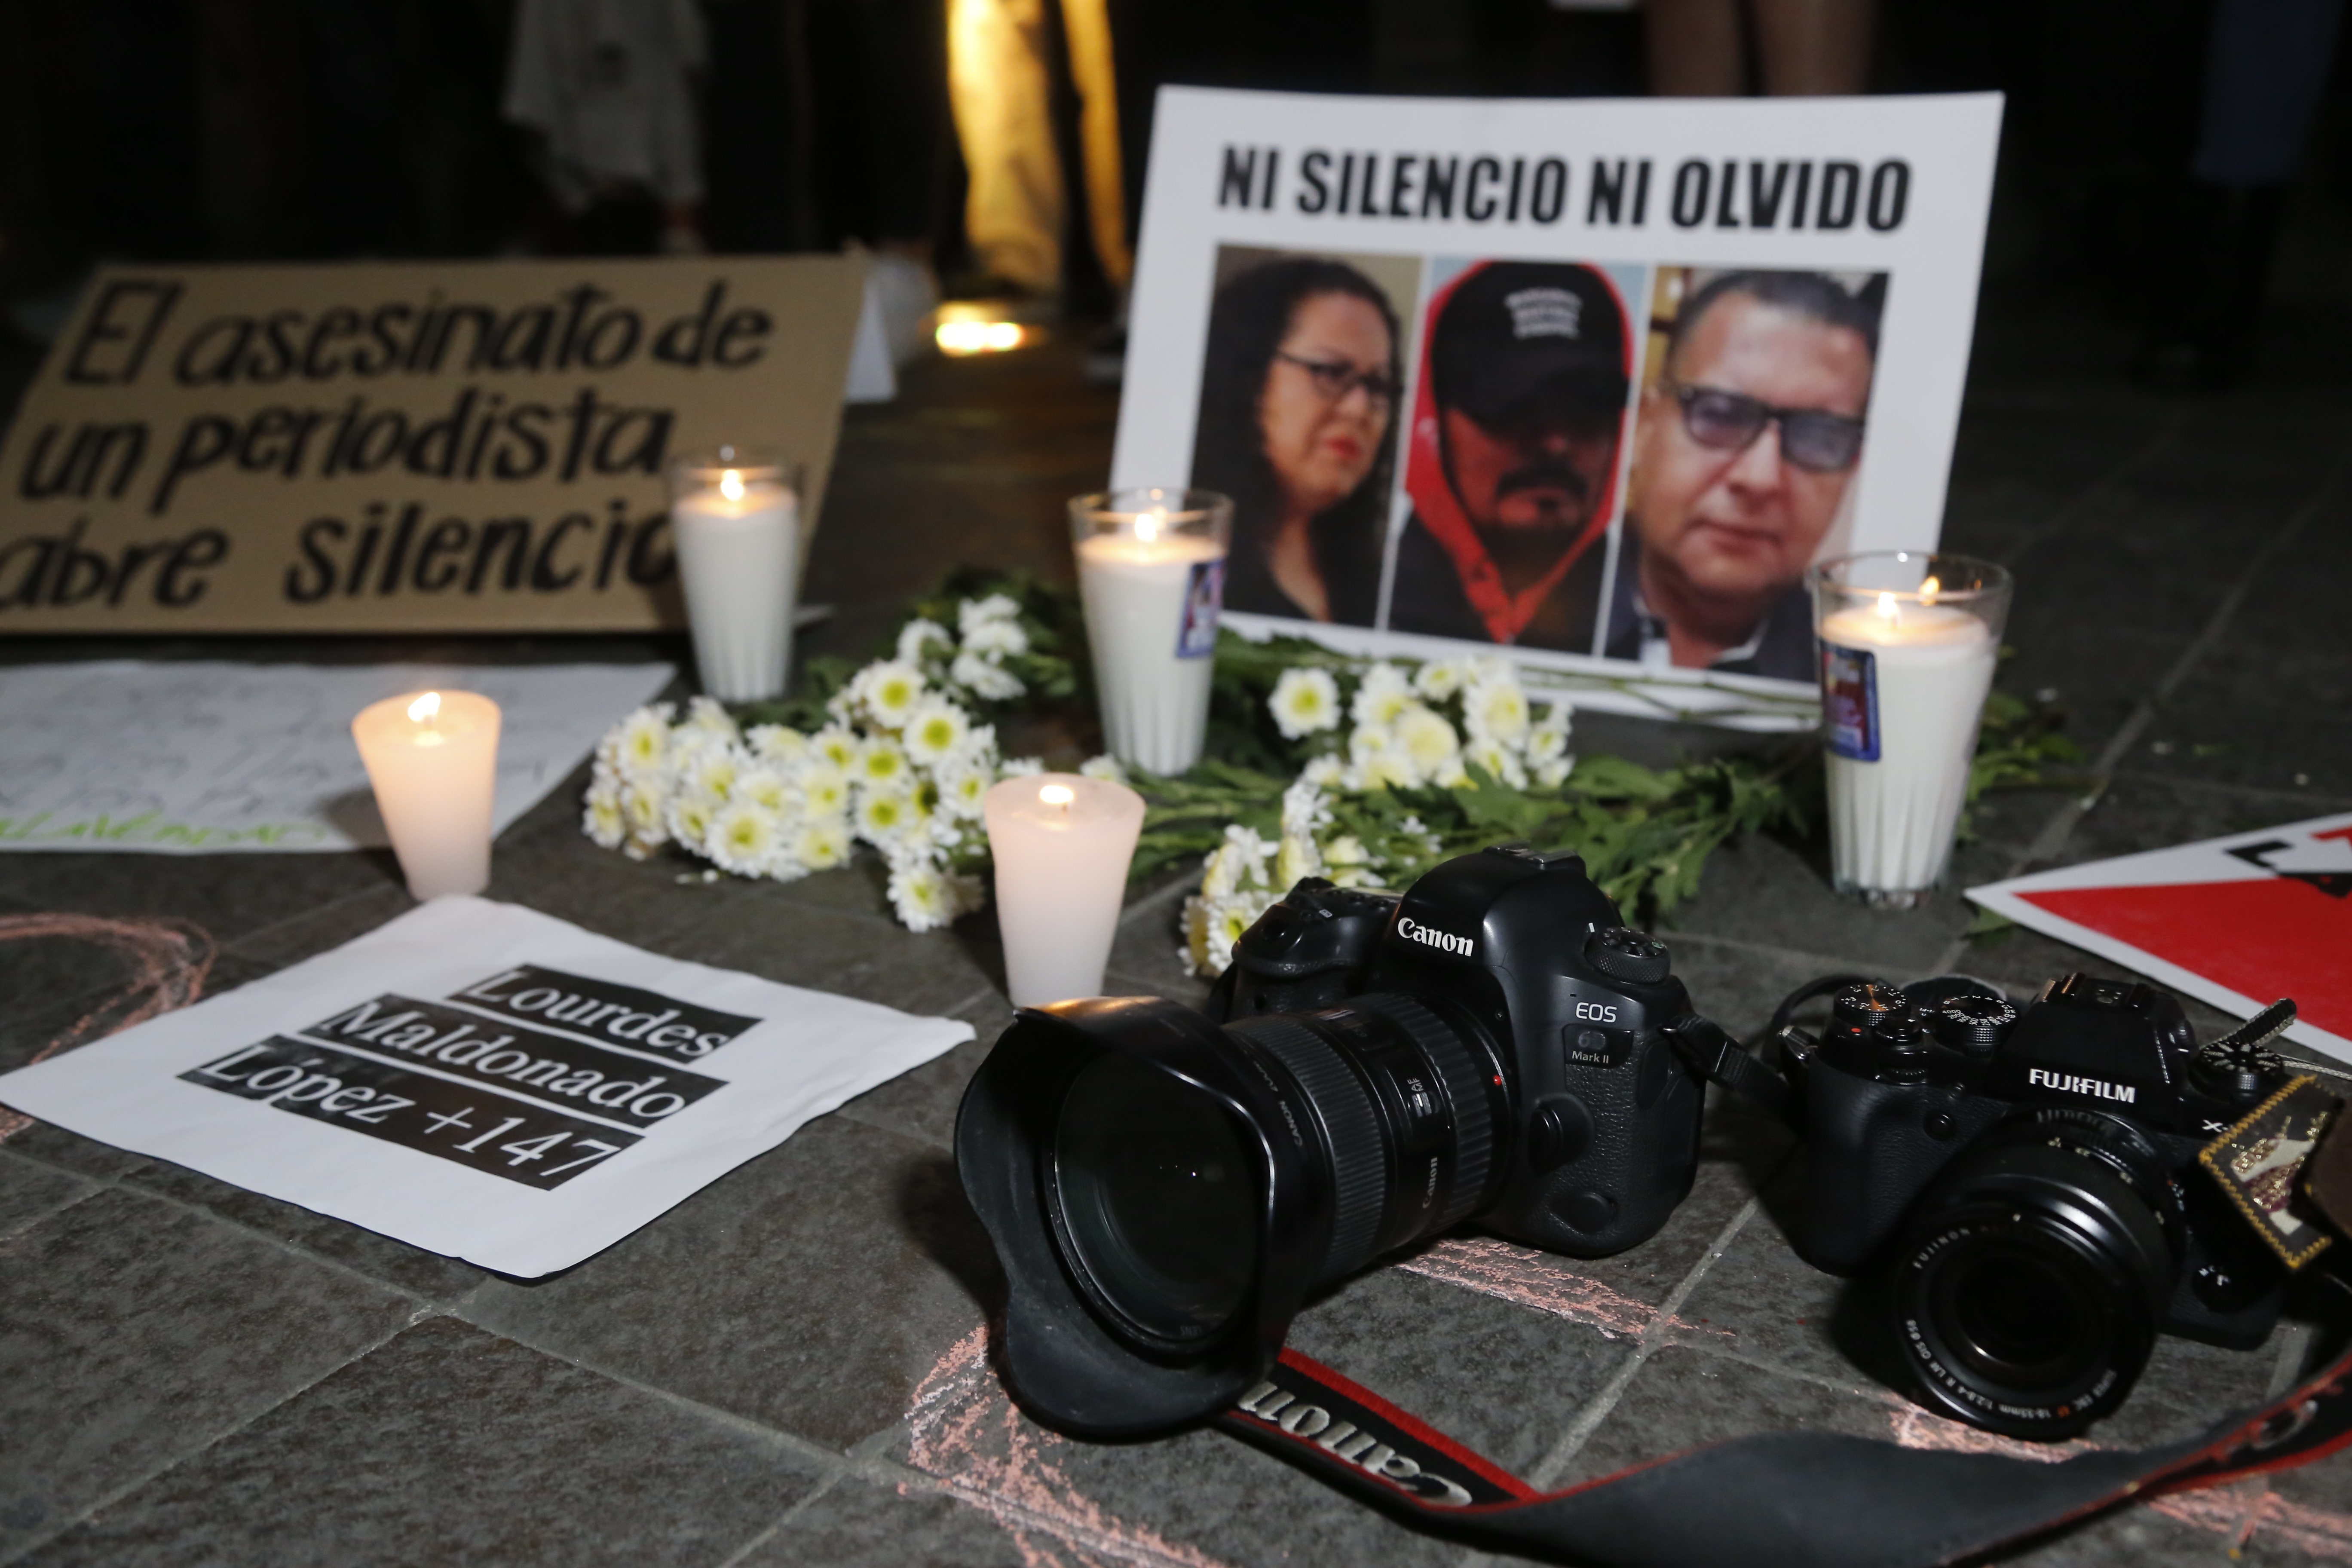 El ataque a periodistas ha ido en aumento en el país (Foto: EFE/Francisco Guasco)